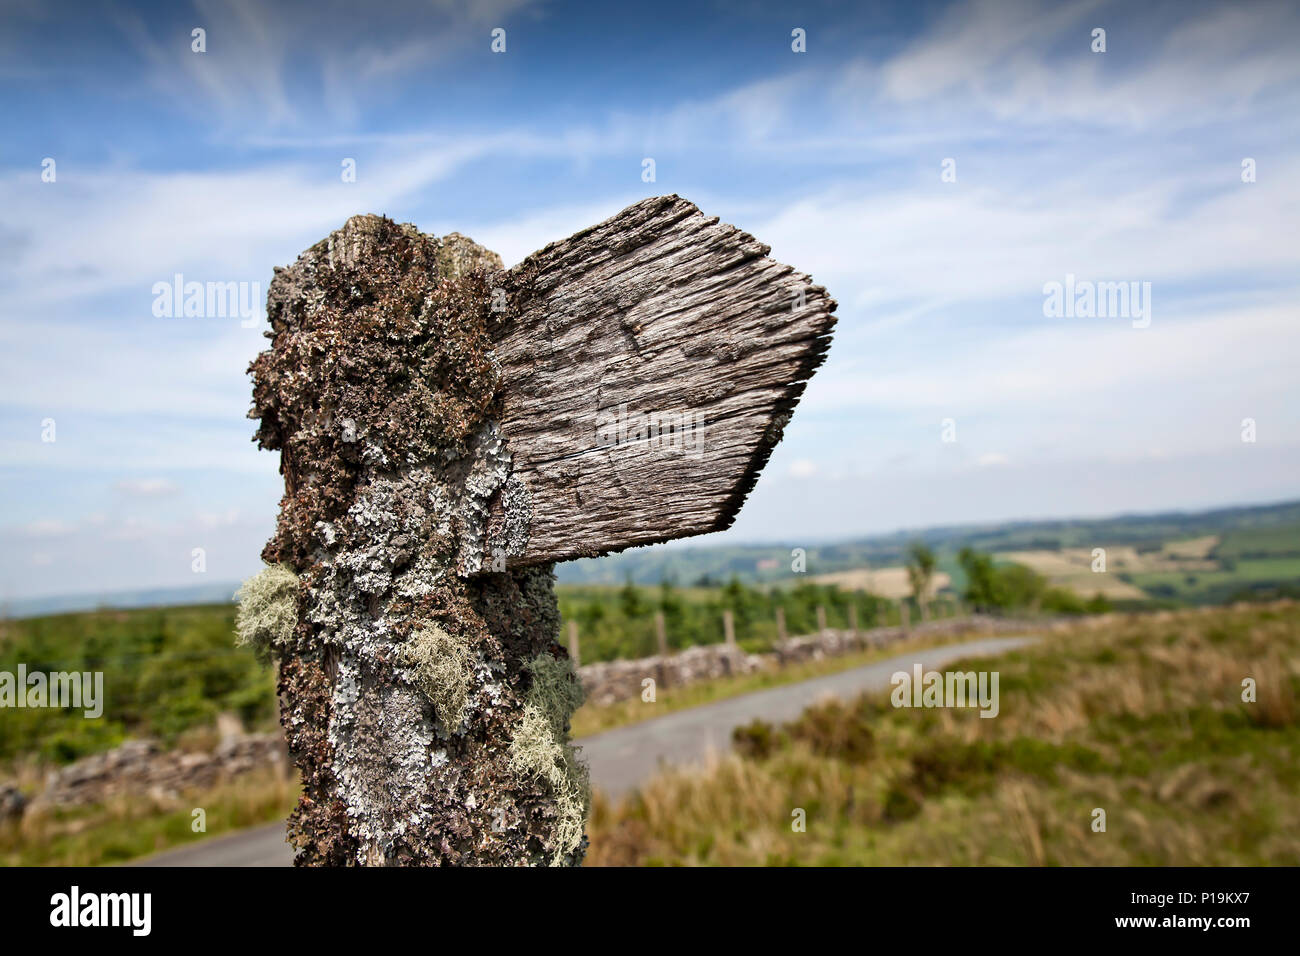 En bois ancien signe bridleway couverts de mousse et de lichen dans le parc national de Brecon Beacons, Pays de Galles, Royaume-Uni Banque D'Images